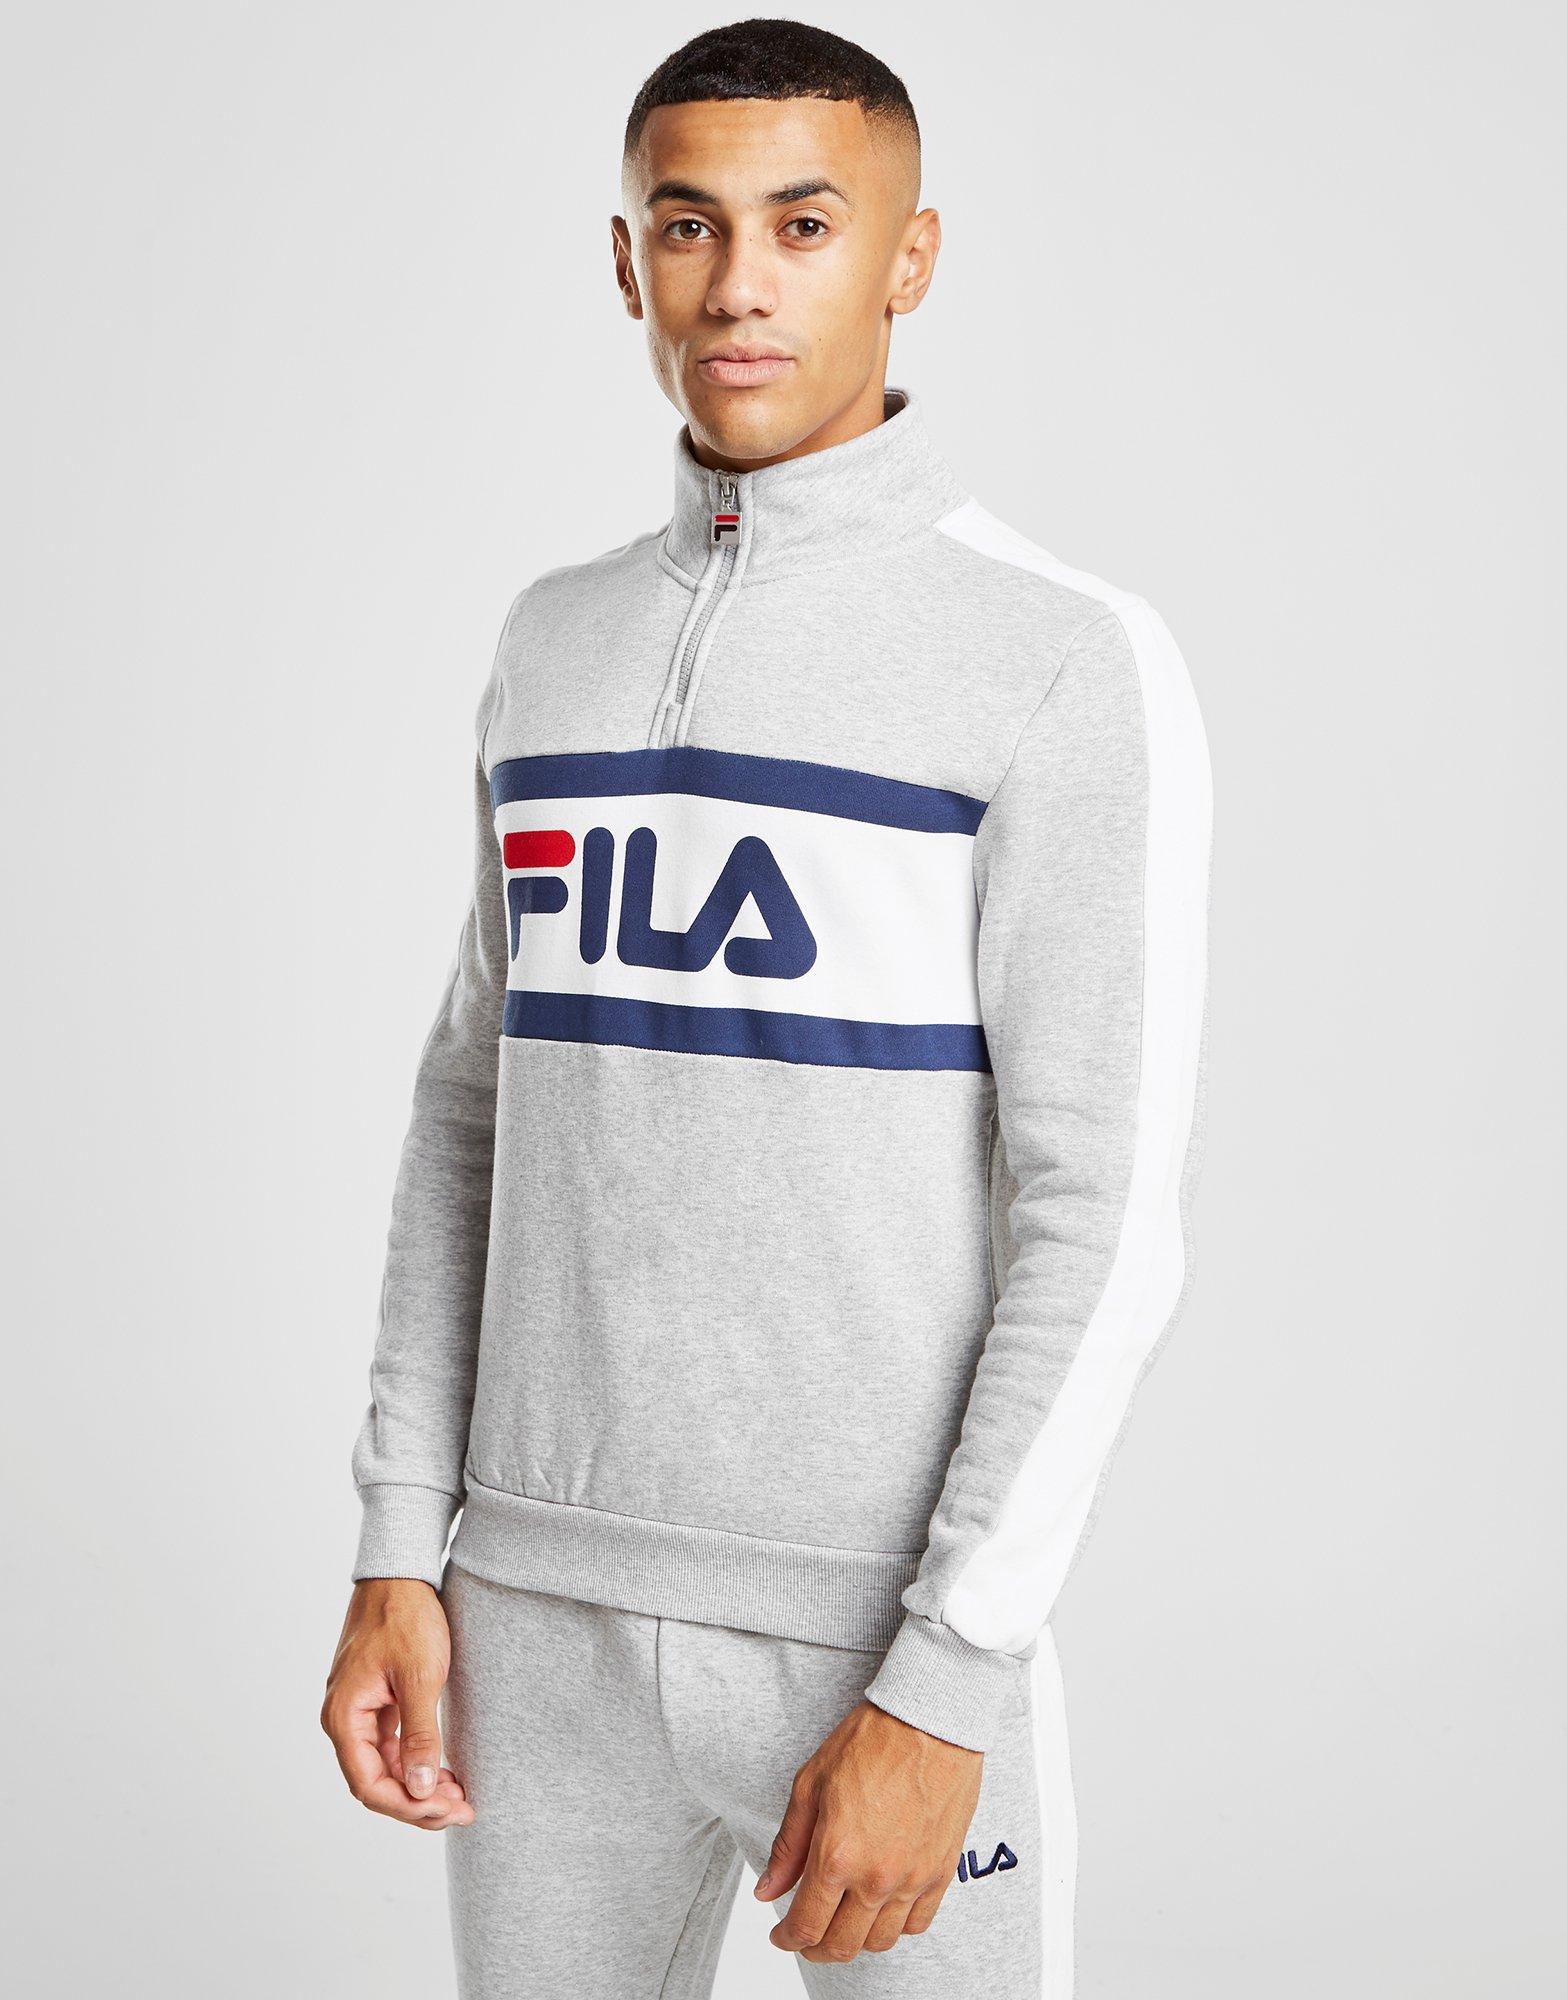 Fila Cotton Babs 1/4 Zip Sweatshirt in Grey (Gray) for Men - Lyst